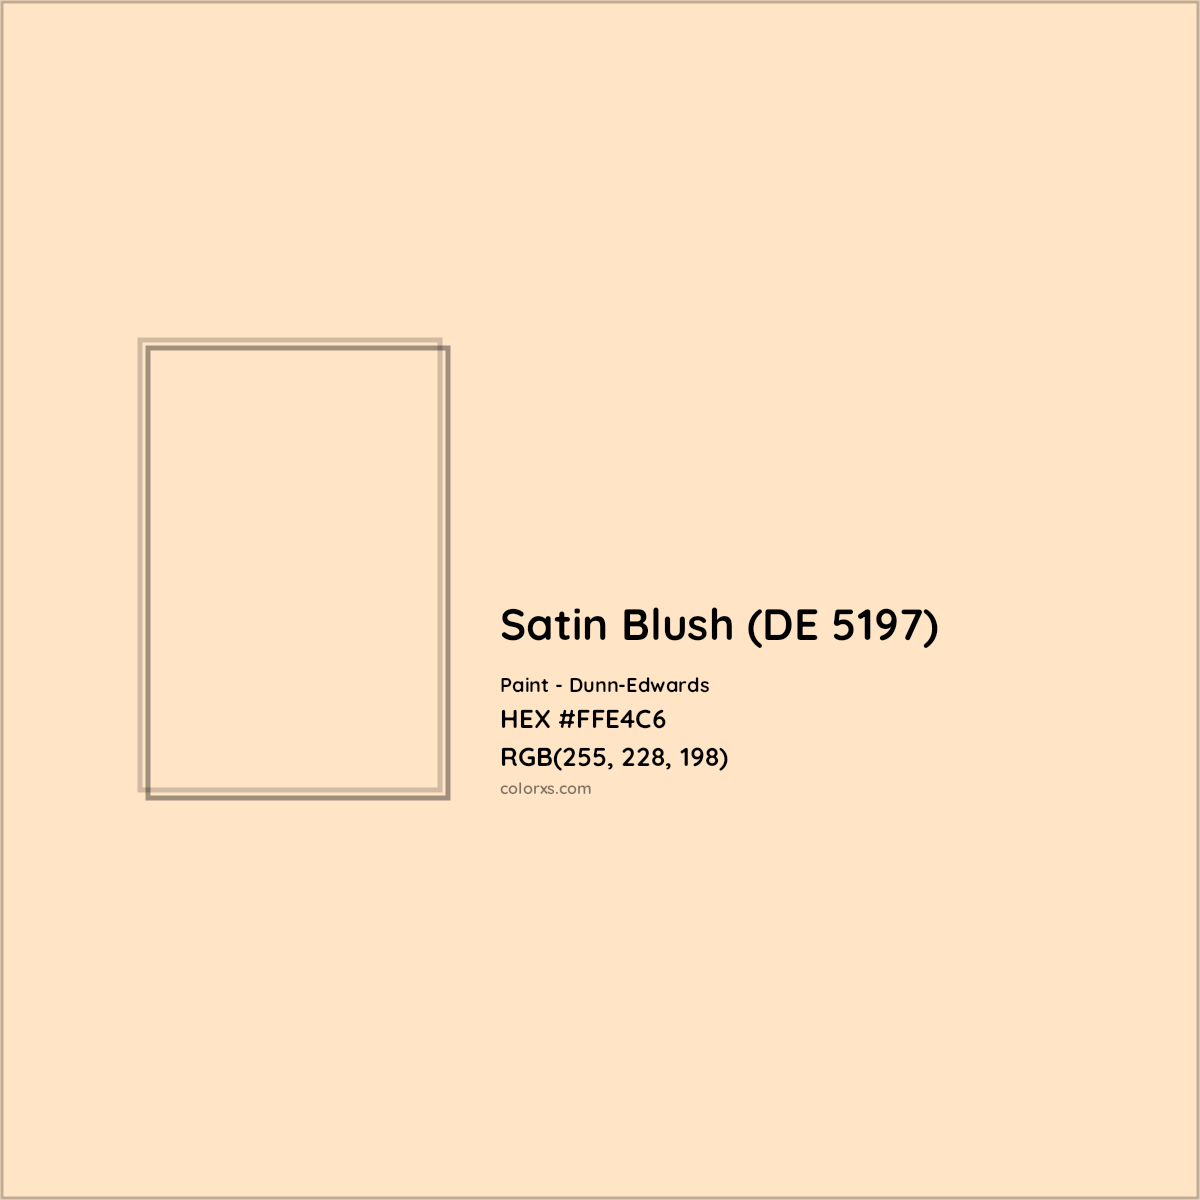 HEX #FFE4C6 Satin Blush (DE 5197) Paint Dunn-Edwards - Color Code